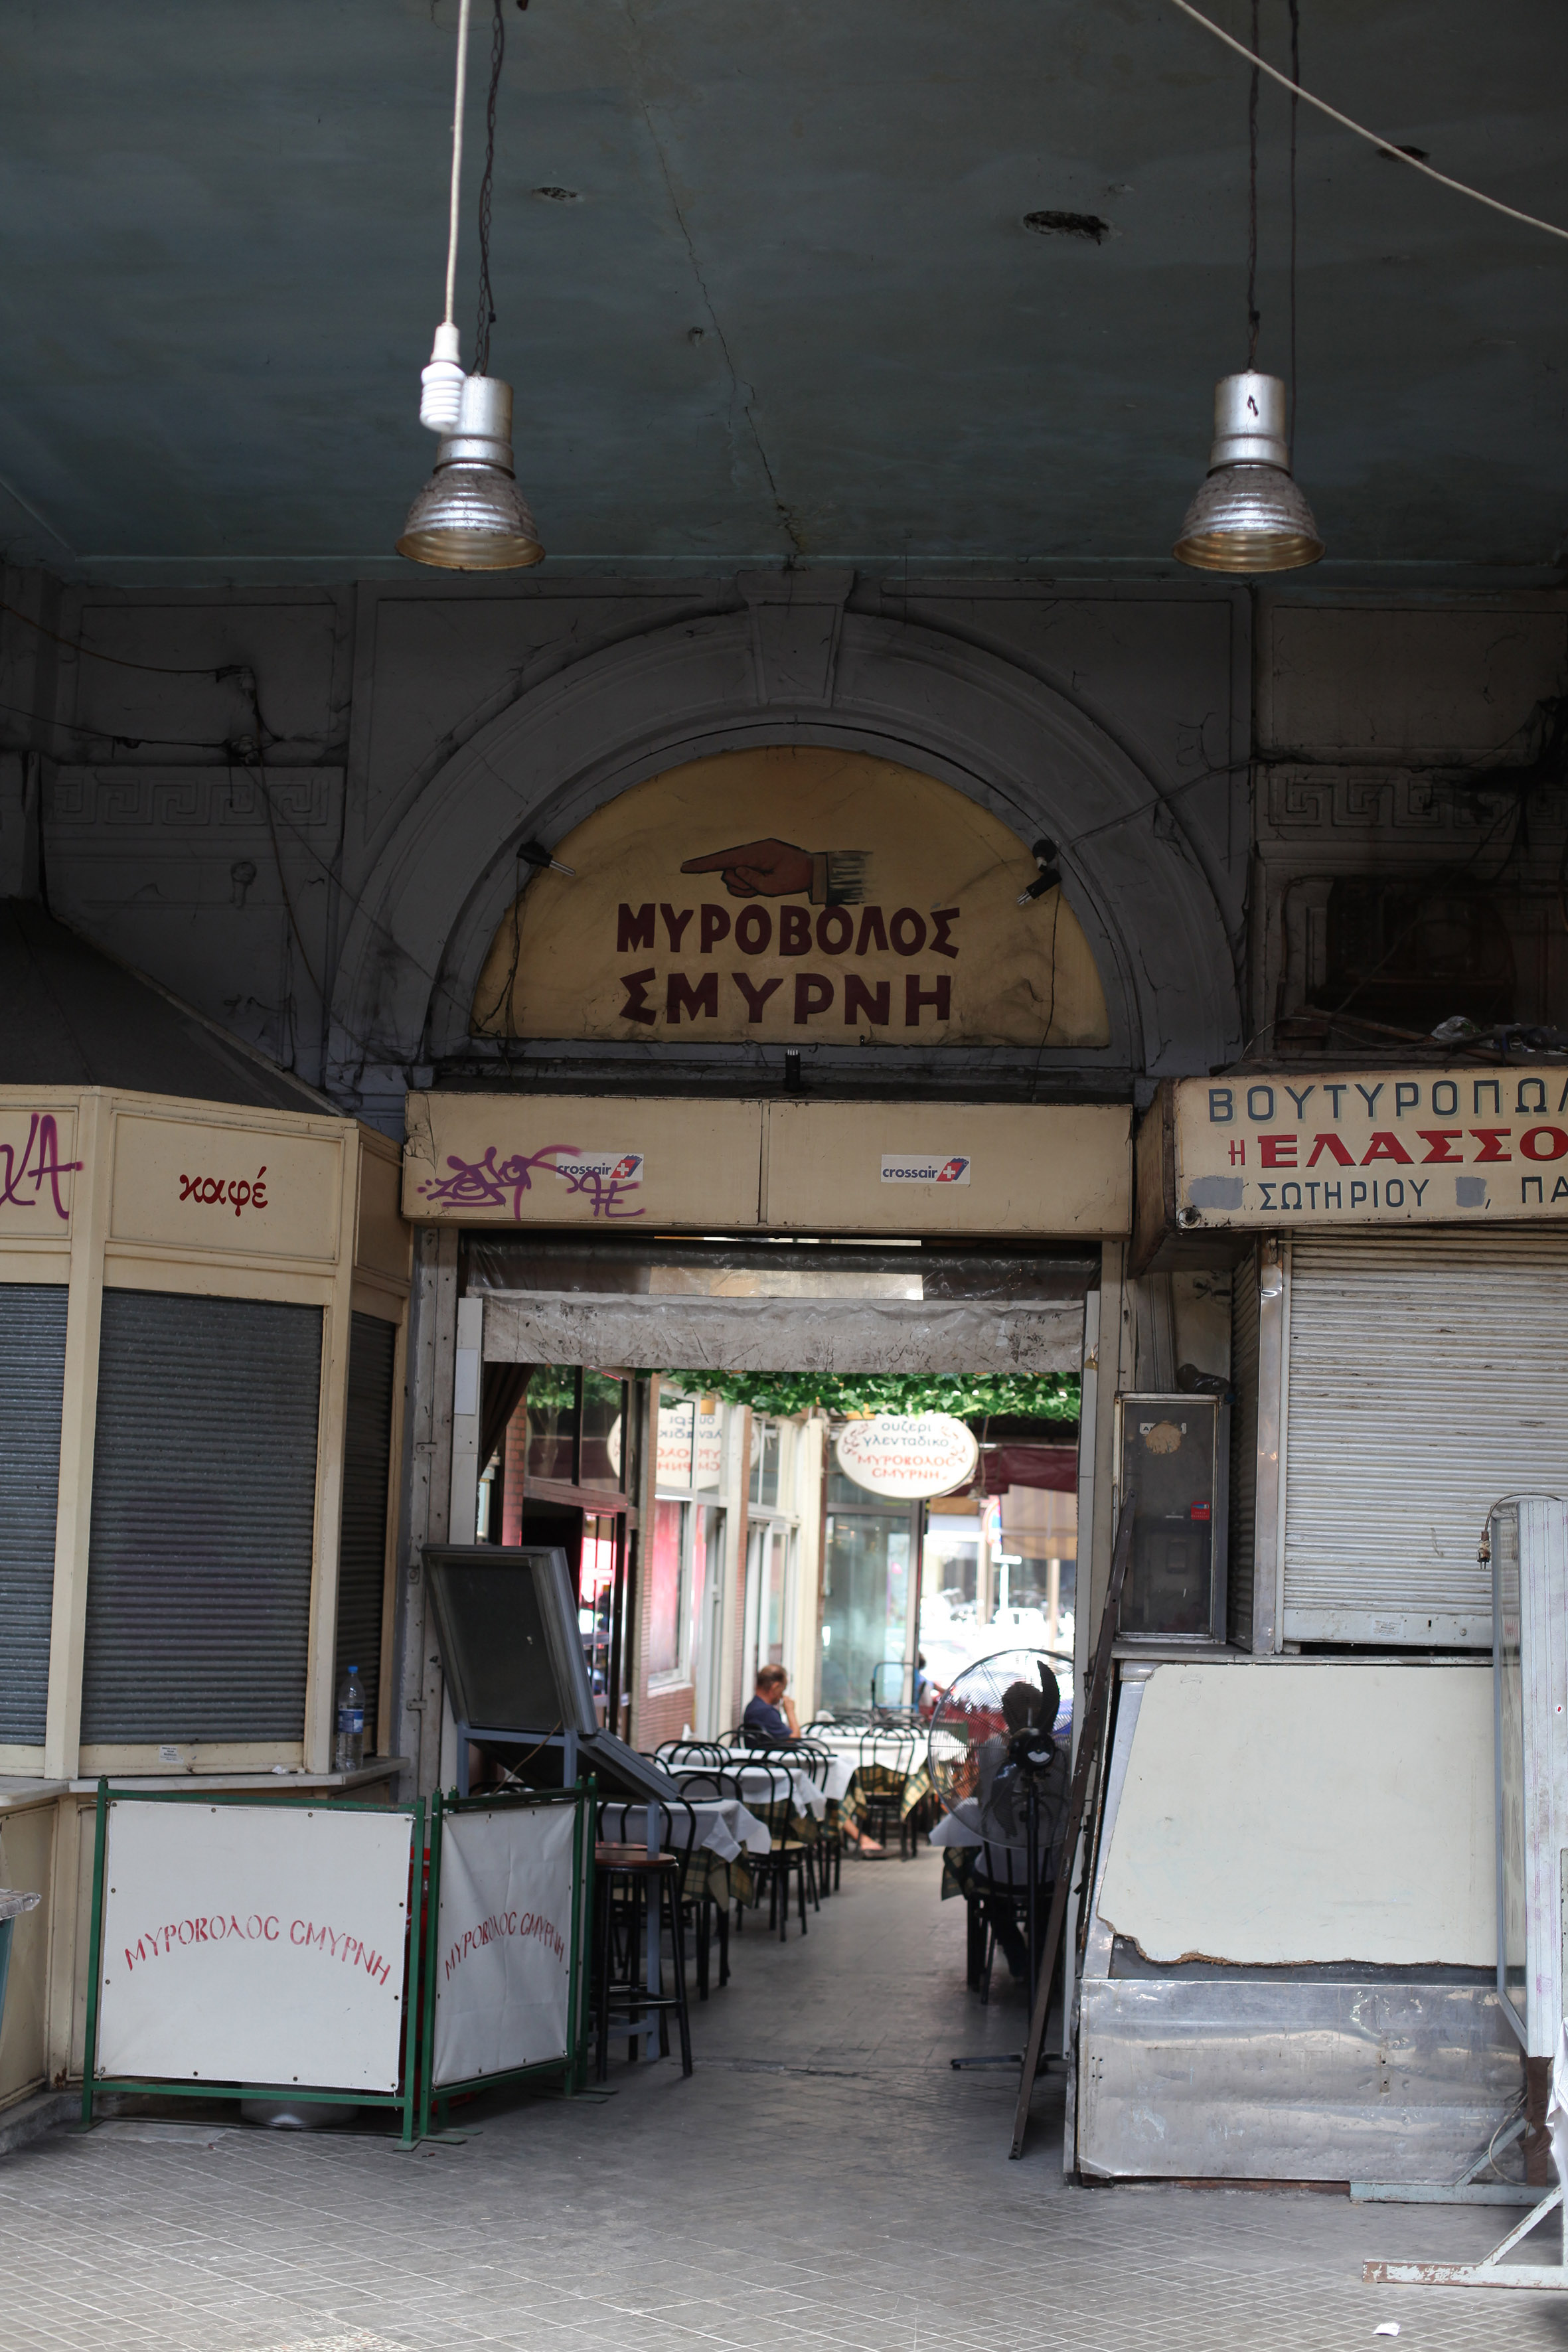 ΤΑΙΠΕΔ: Ολοκληρώθηκε η πώληση της αγοράς Μοδιάνο στη Θεσσαλονίκη